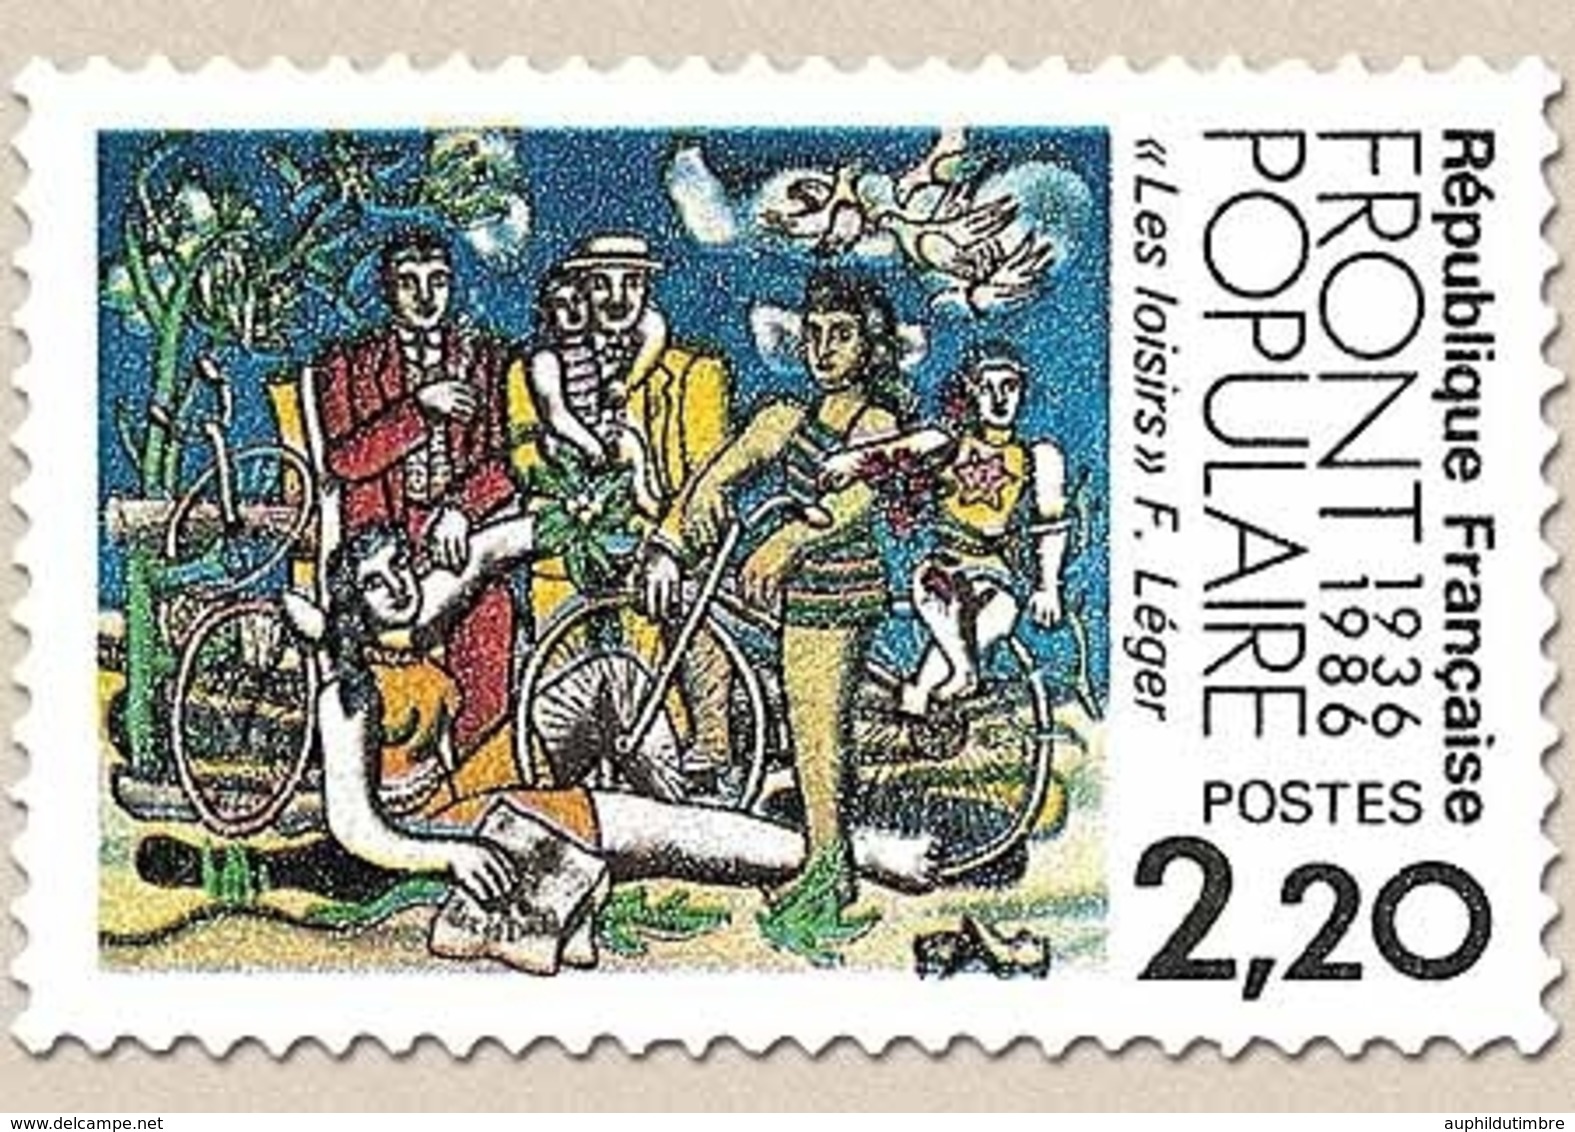 Cinquantenaire Du Front Populaire. Les Loisirs, D'après Fernand Léger. 2f.20 Multicolore Y2394 - Ongebruikt